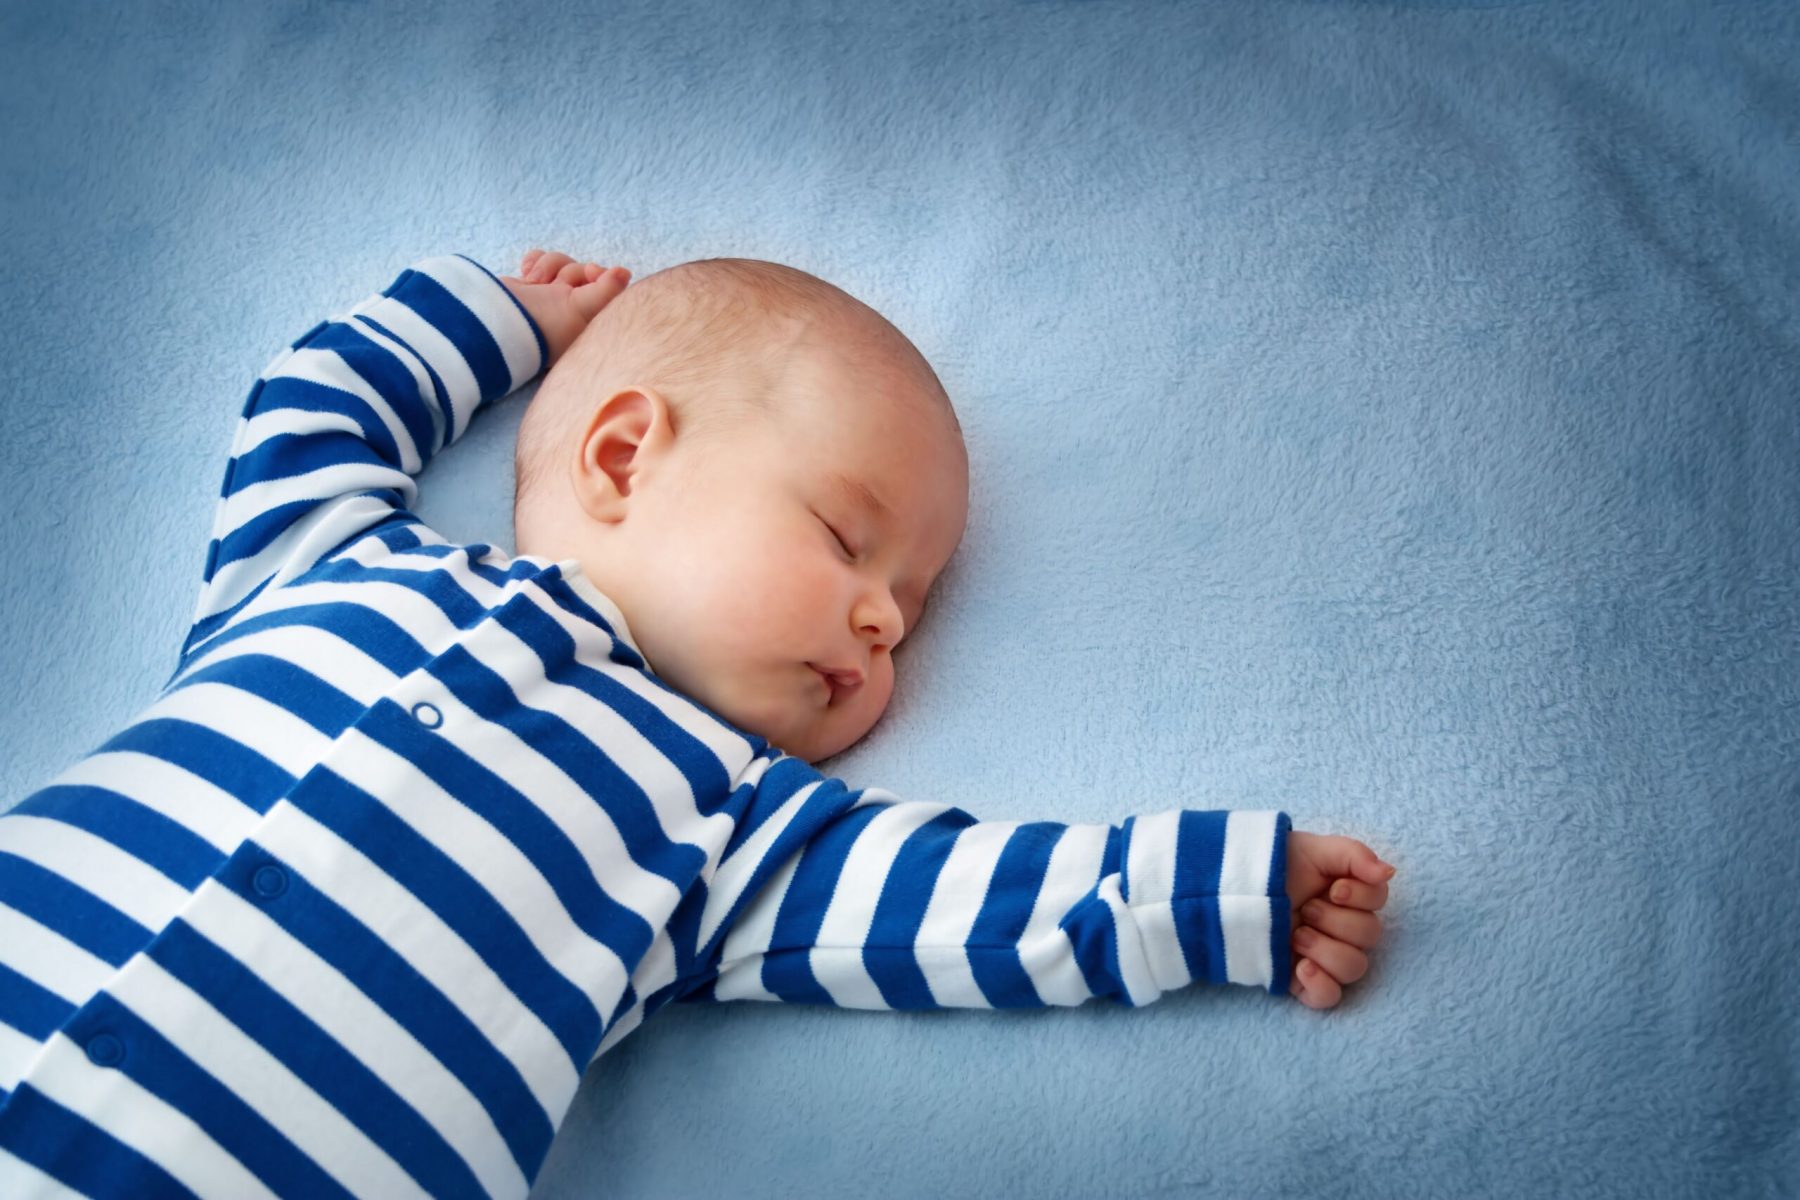 Sleep training  ή πόσο αντέχετε το κλάμα του μικρού σας δυνάστη